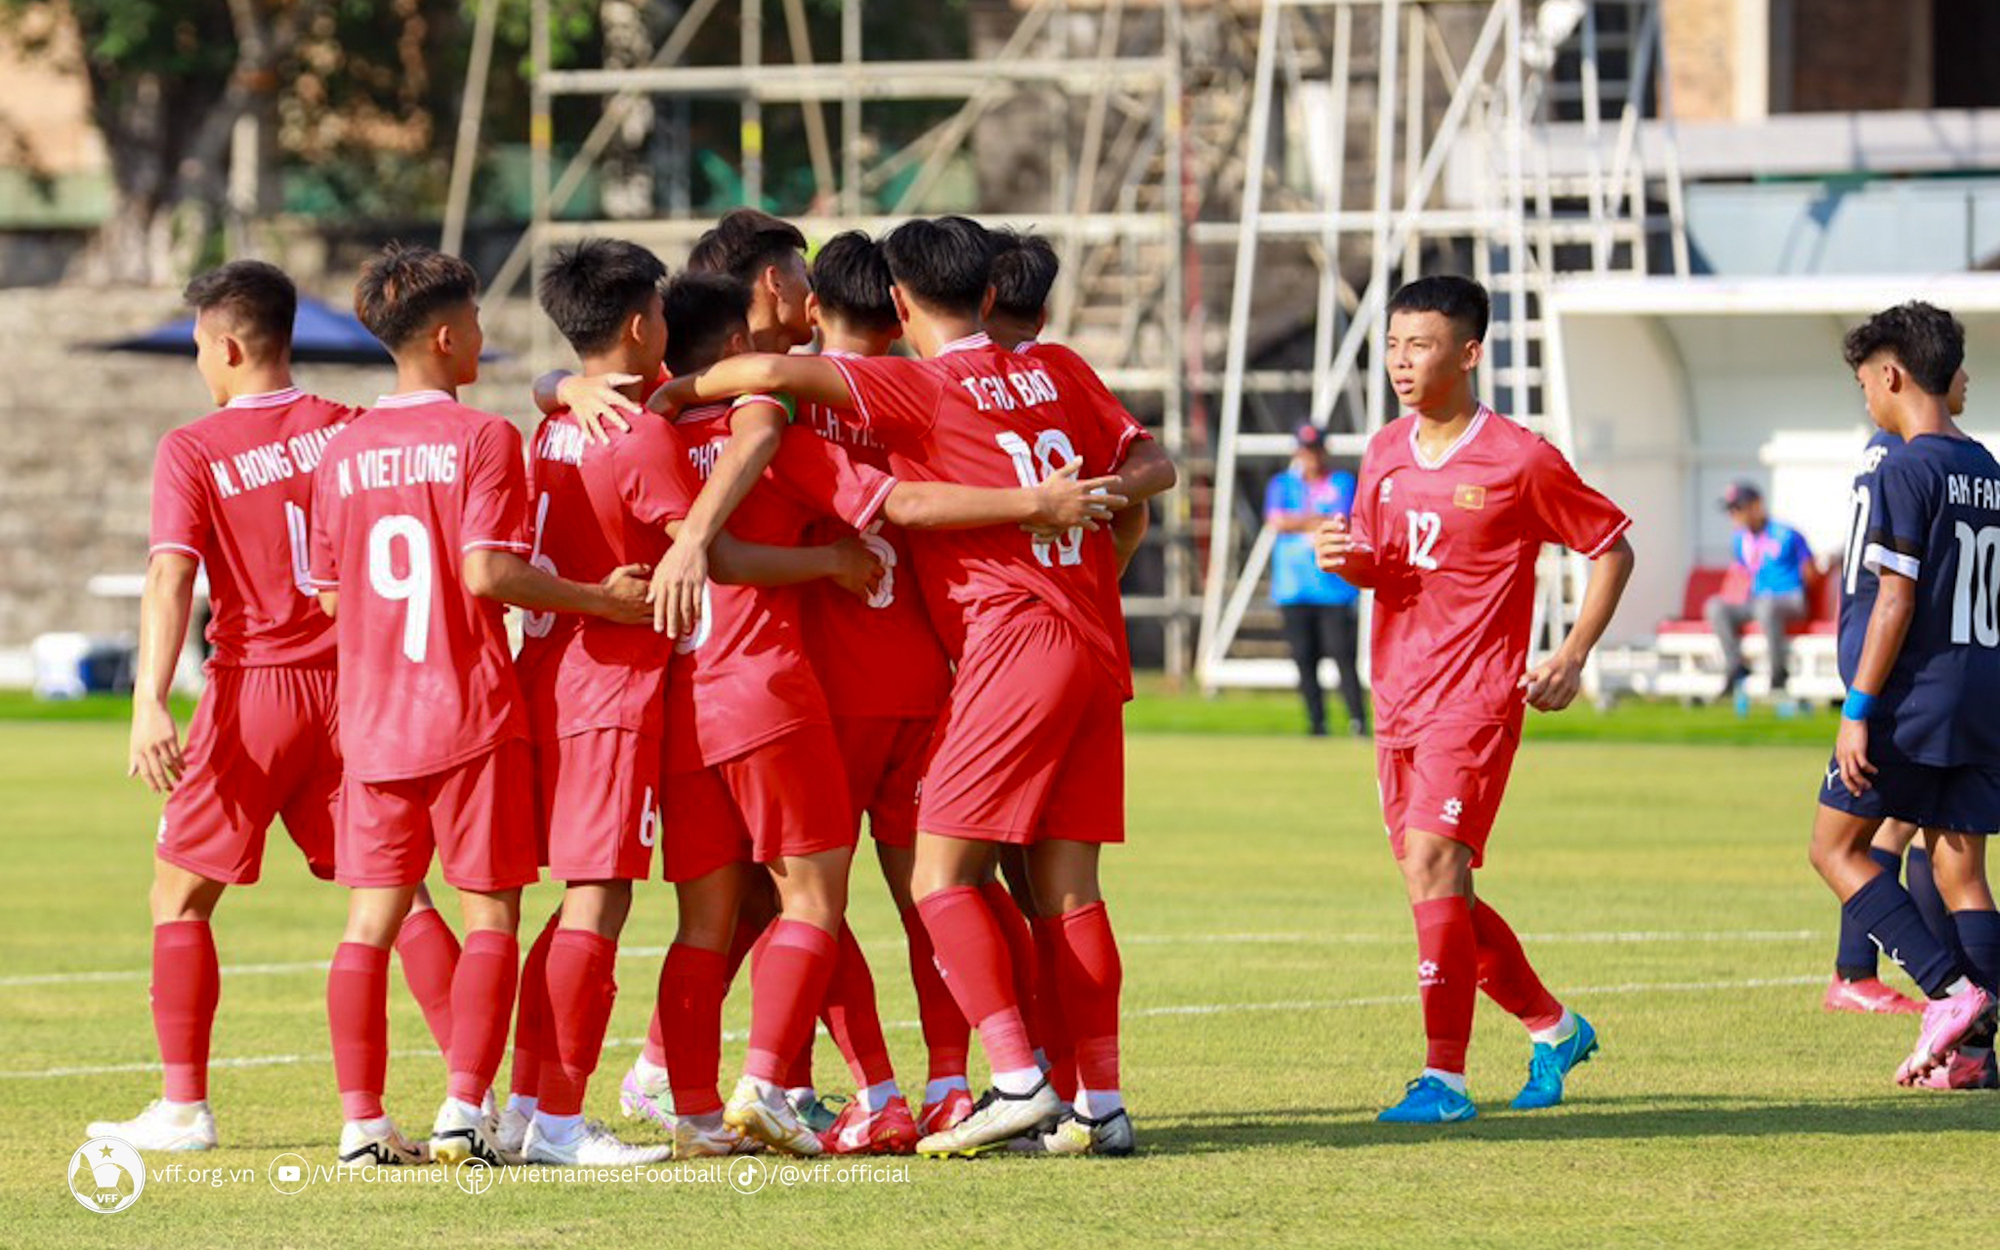 Ghi 15 bàn thắng, tuyển Việt Nam bị báo Indonesia chỉ trích 